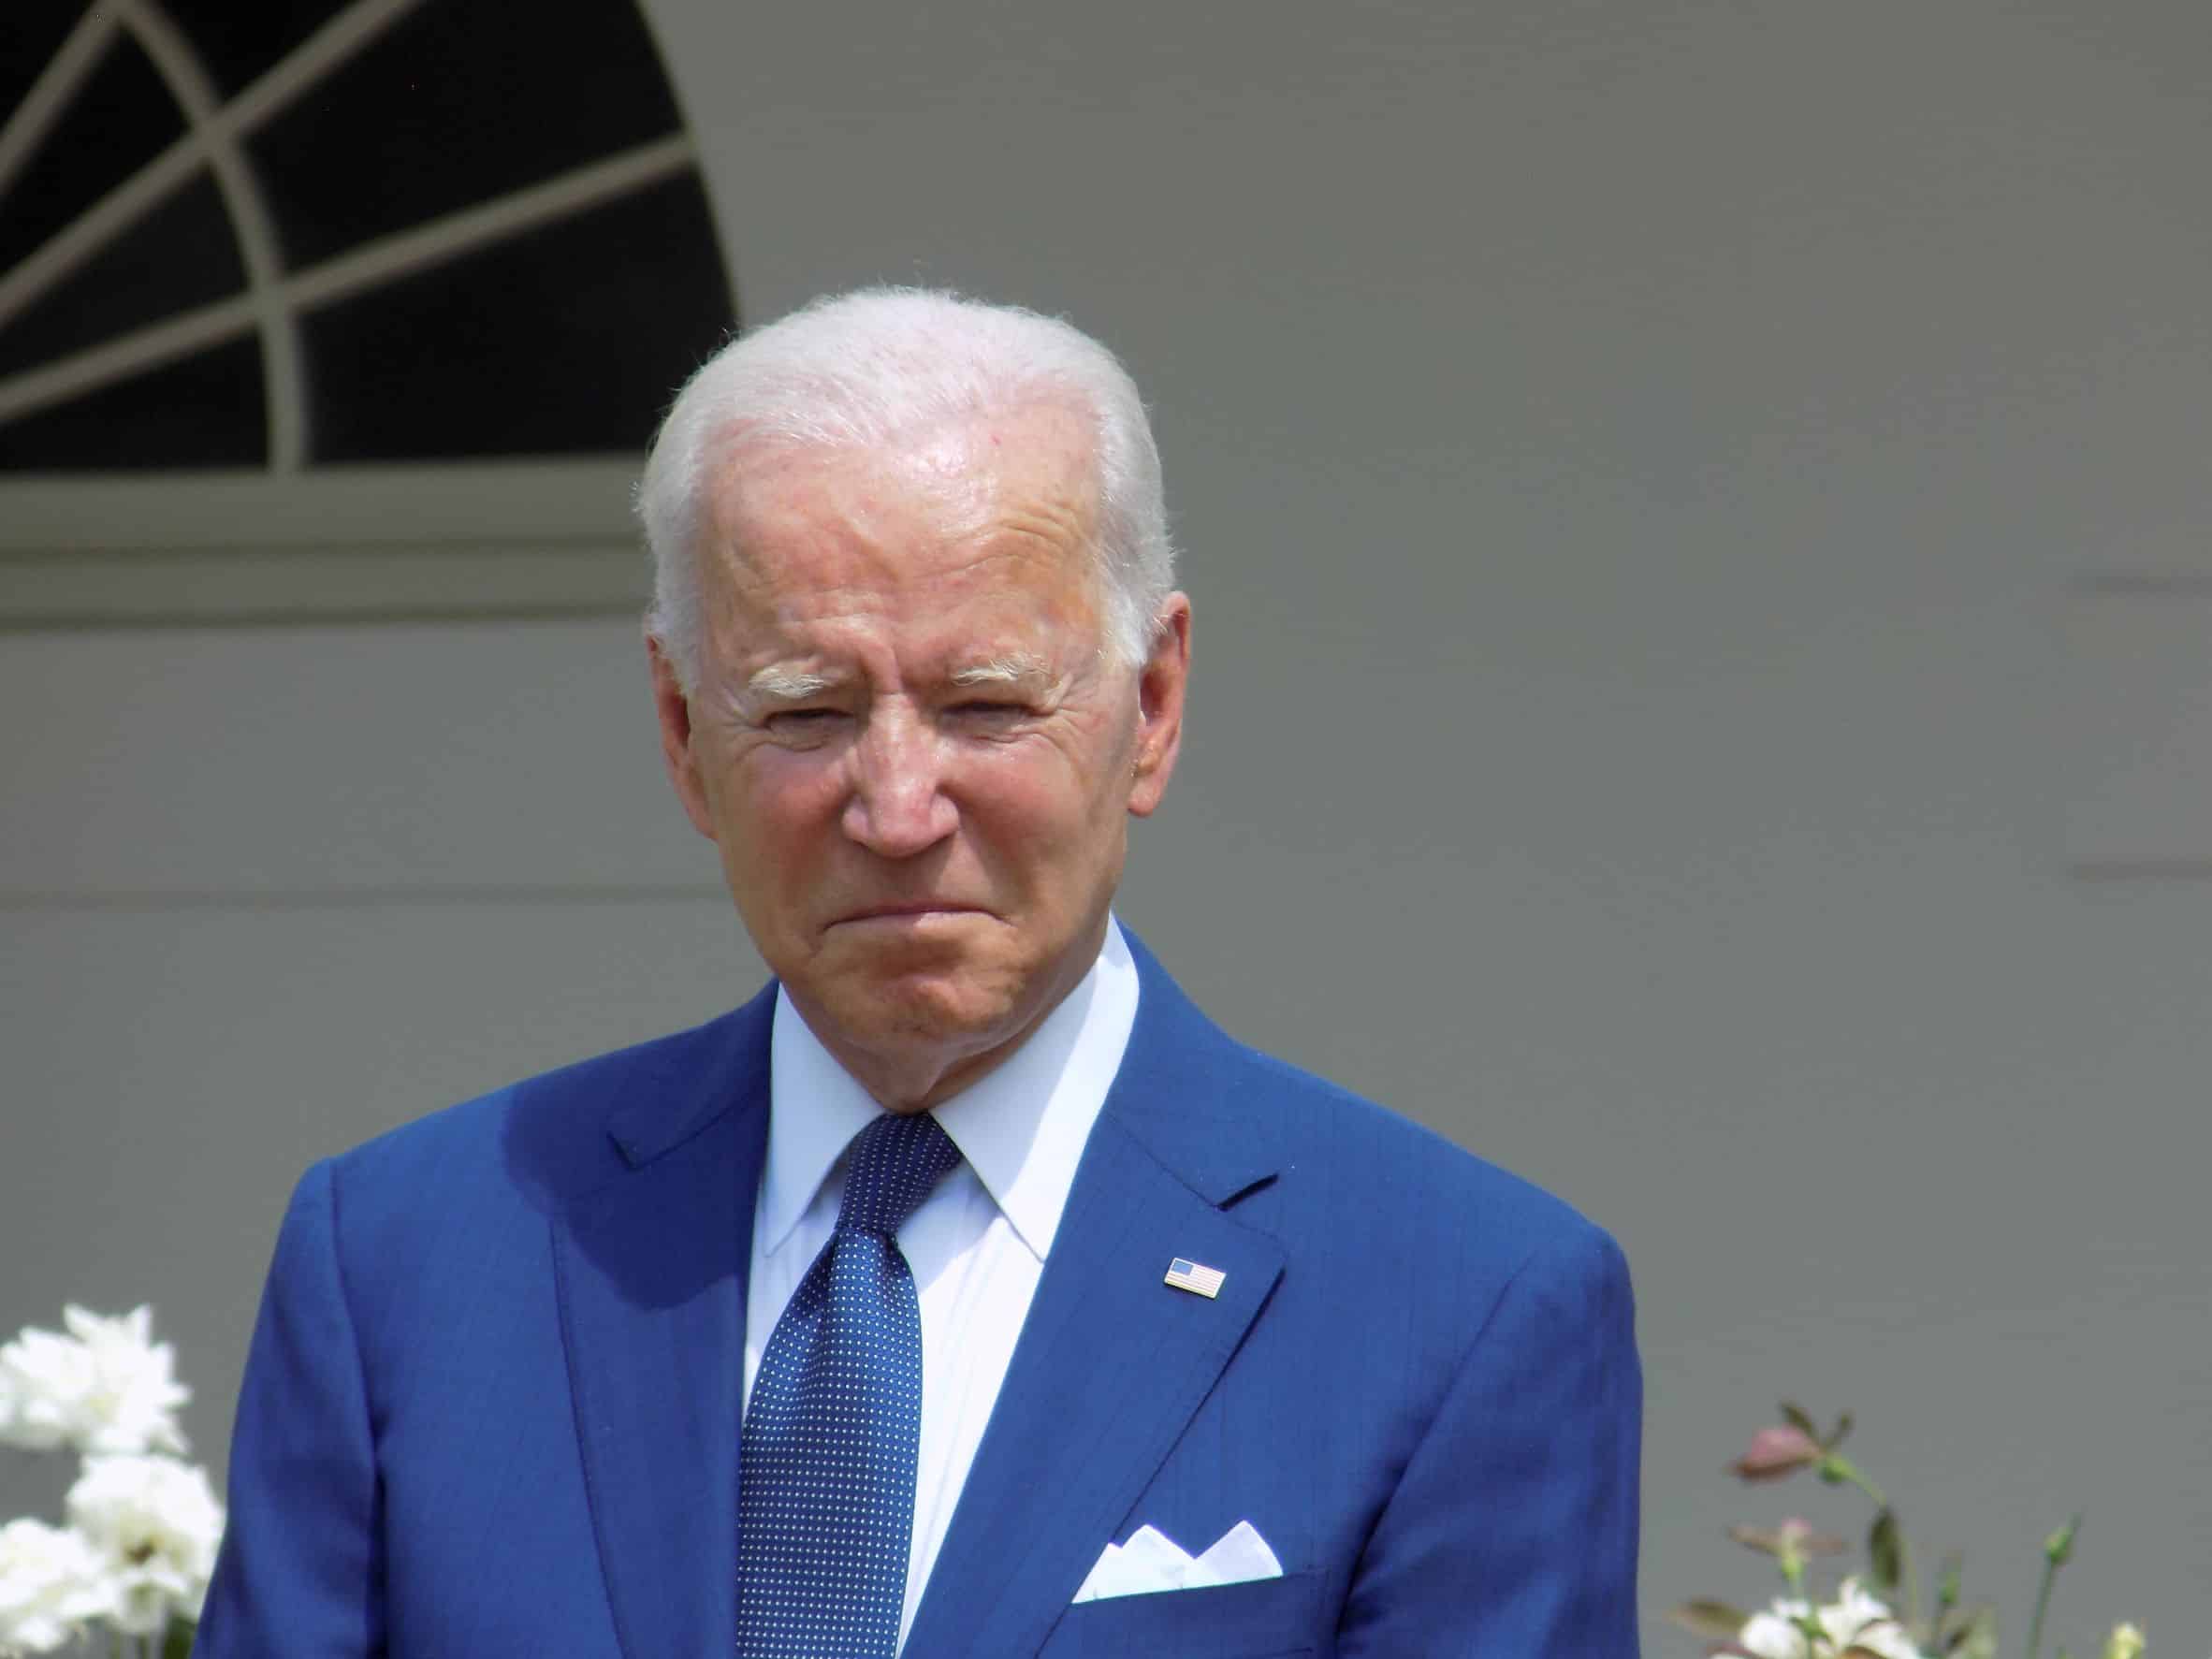 Biden Officials Give Assurances U.S. Has Strong Mideast Influence